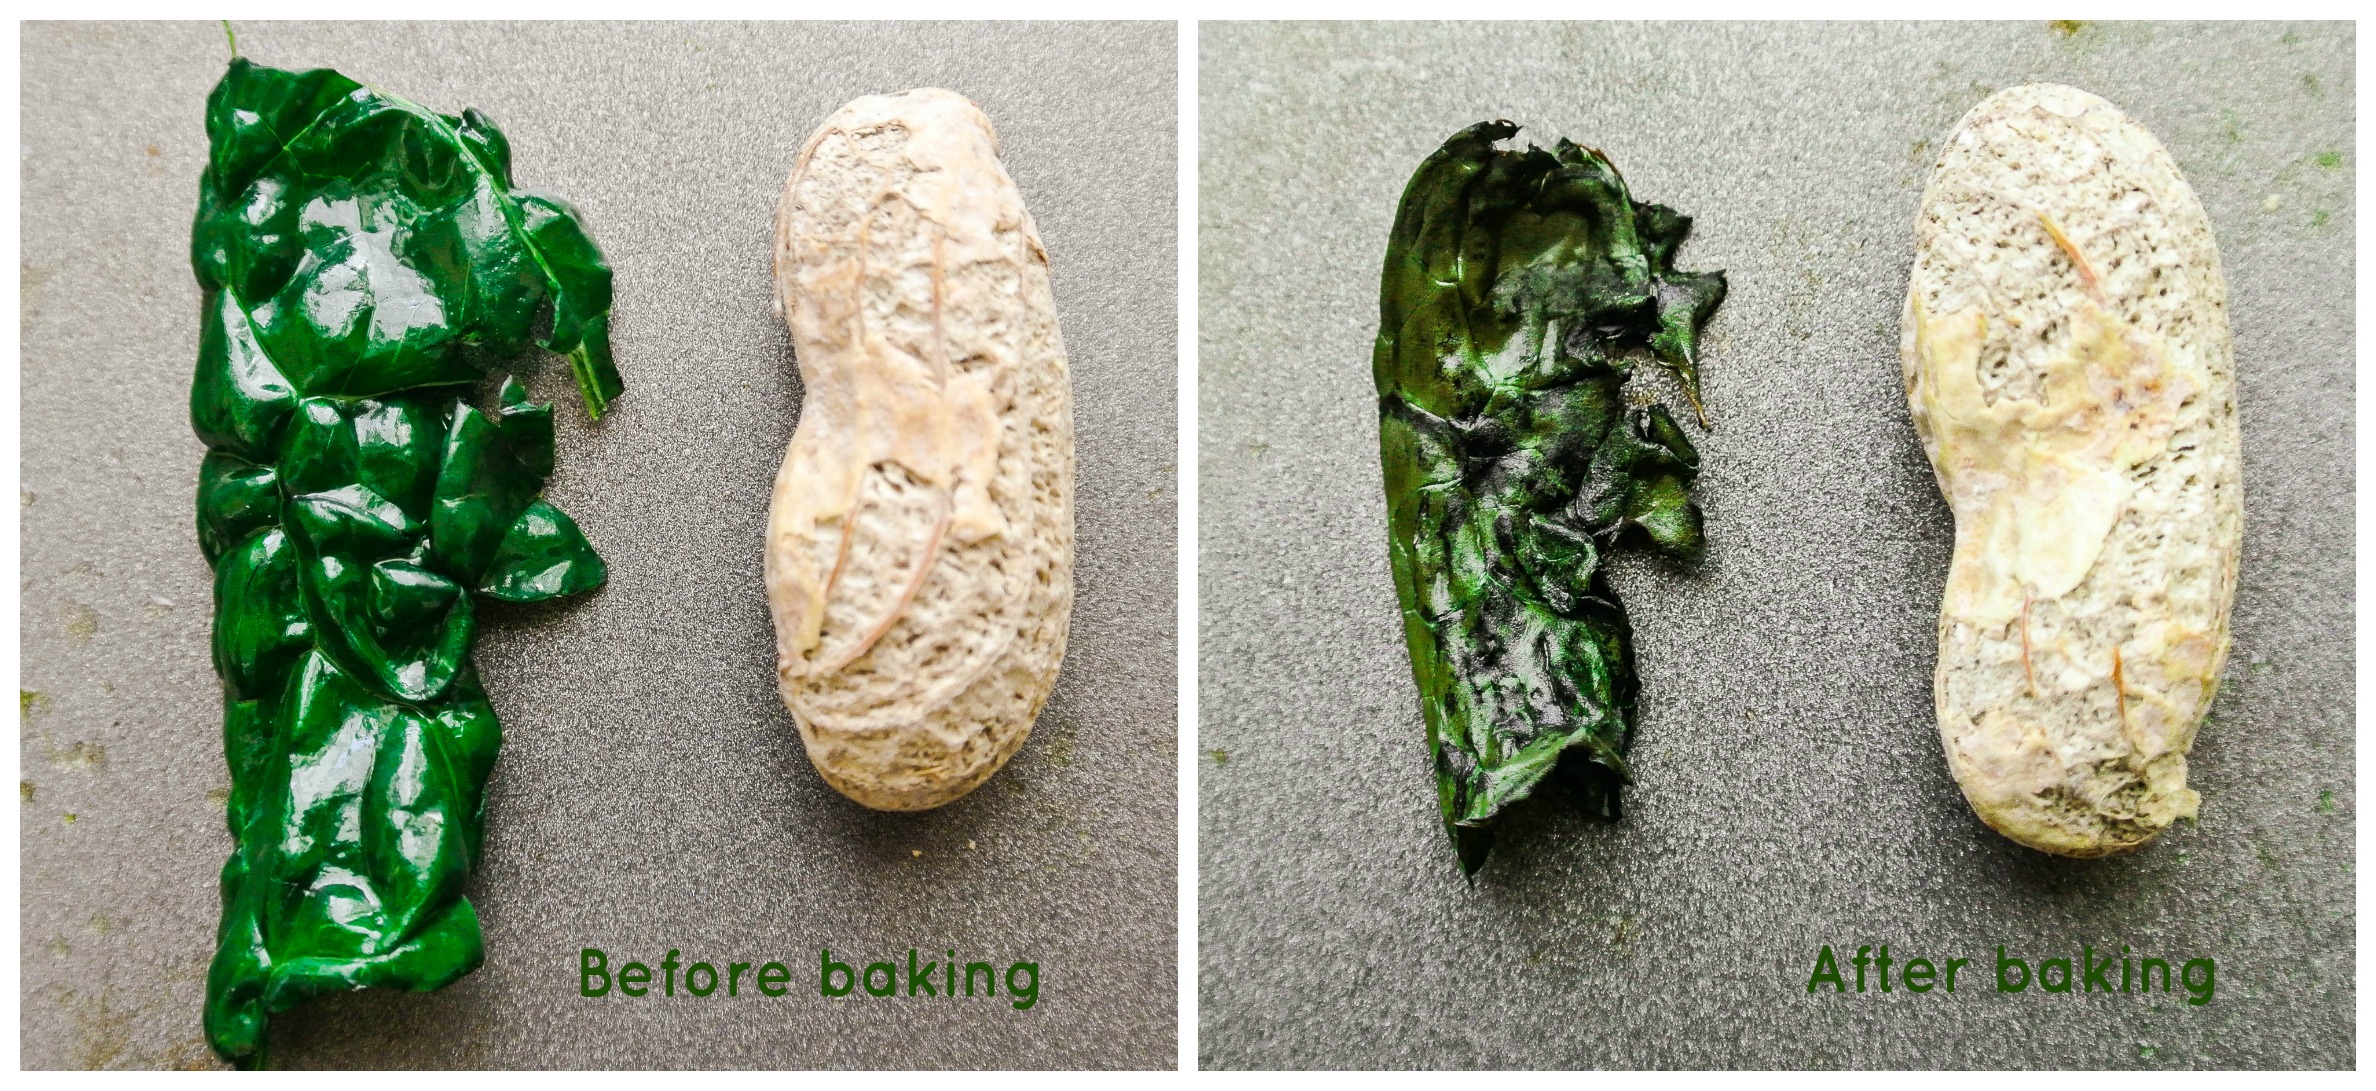 Peanut comparison - Kale chips